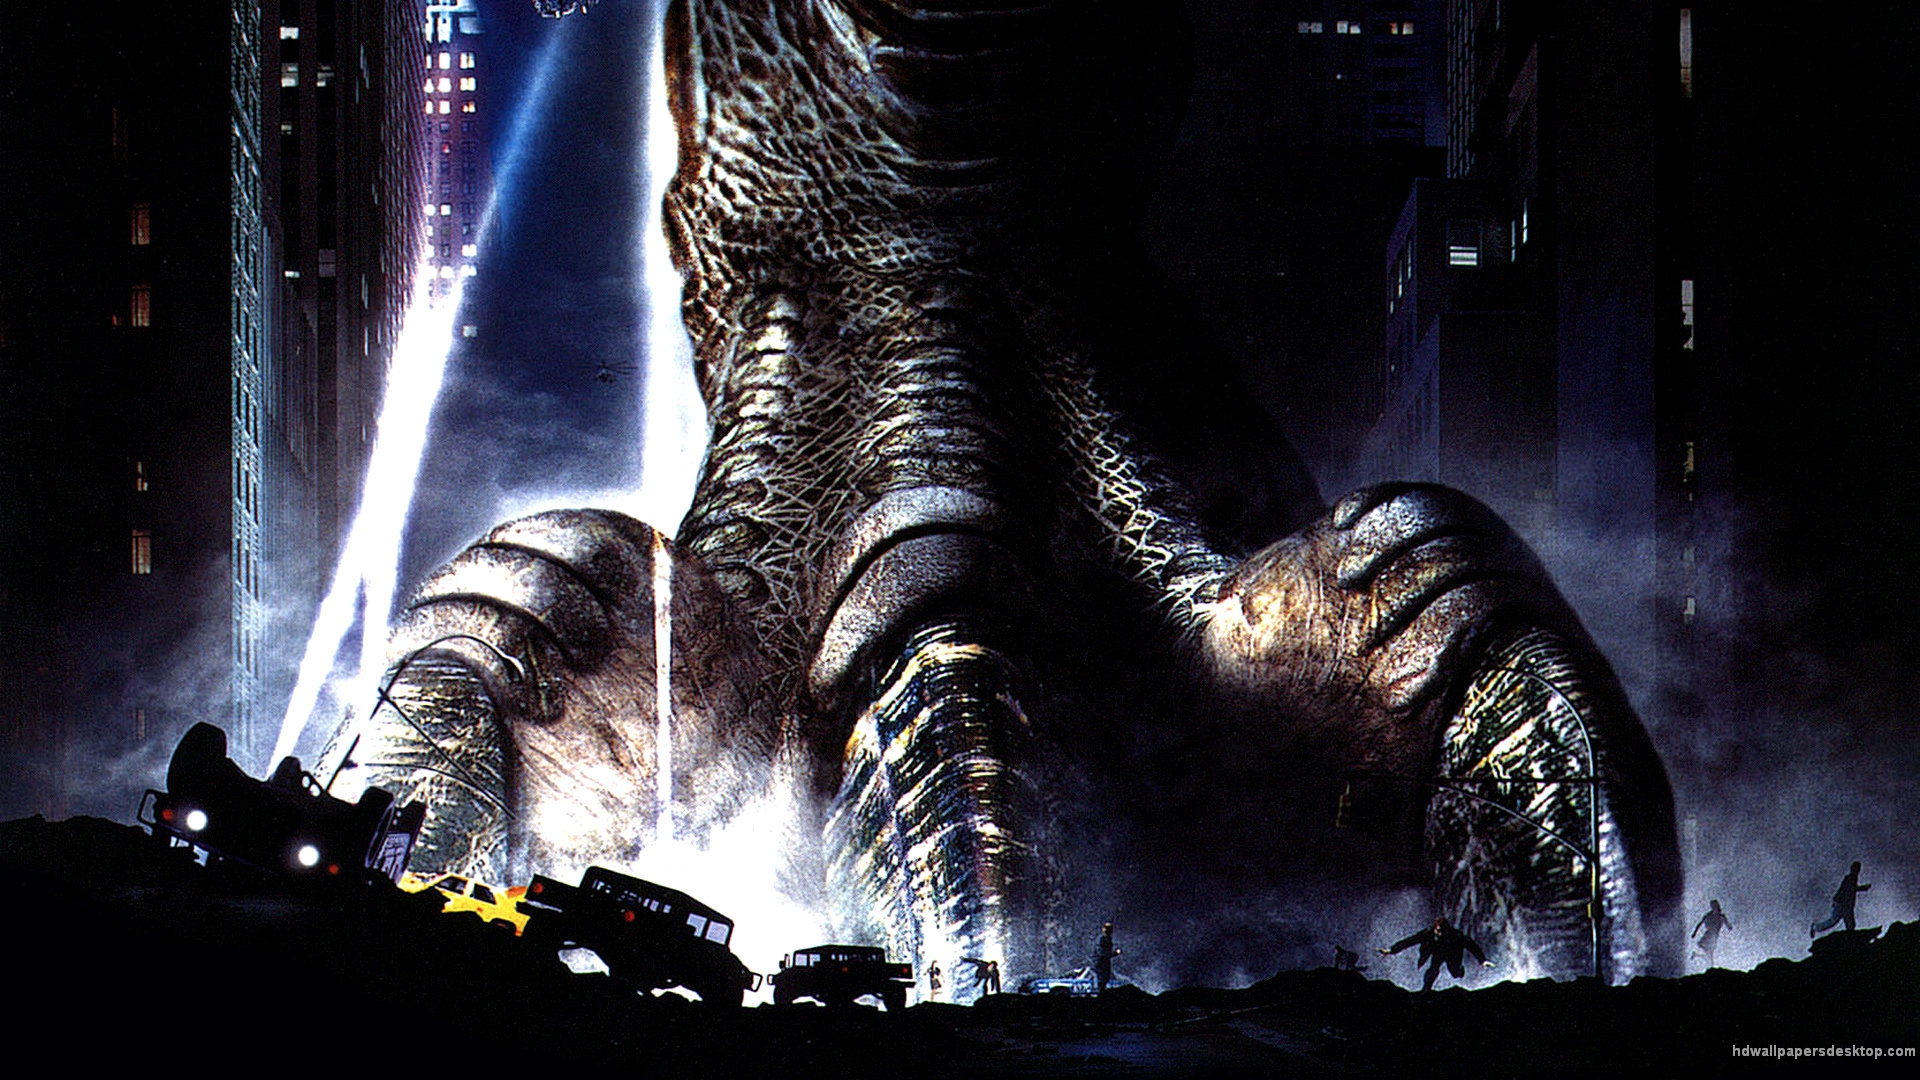 Movie Godzilla (1998) HD Wallpaper | Background Image